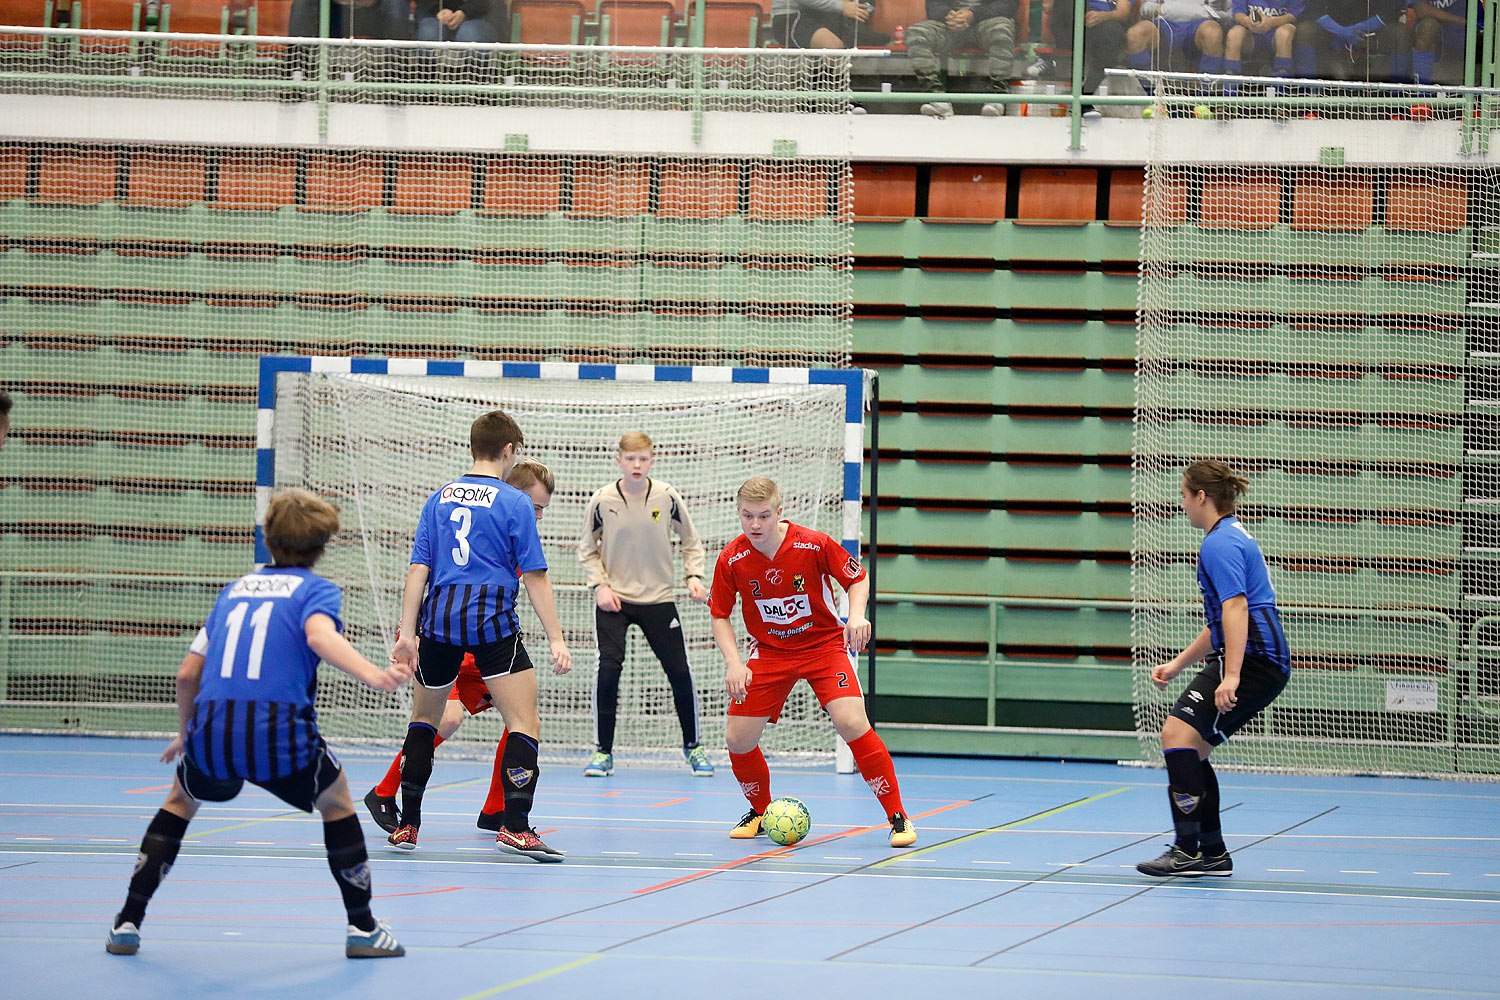 Skövde Futsalcup Herrjuniorer Ulricehamns IFK-Töreboda IK,herr,Arena Skövde,Skövde,Sverige,Skövde Futsalcup 2016,Futsal,2016,141918